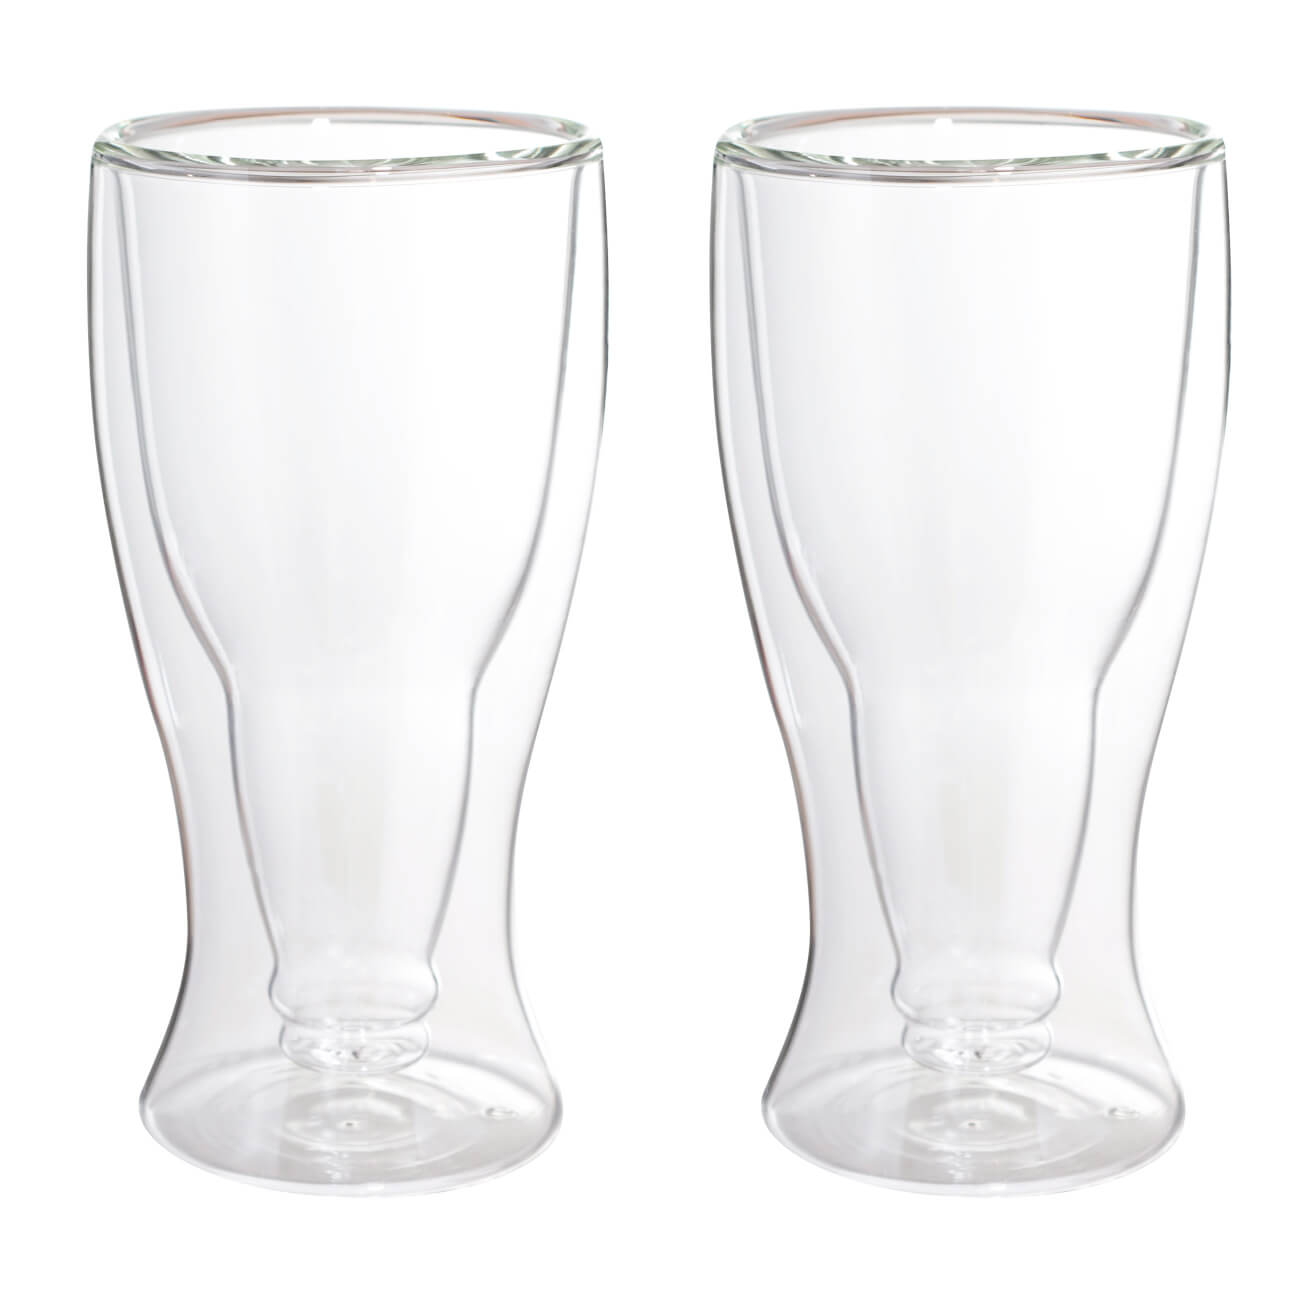 16490 fissman набор sencha из 2 х стаканов с двойными стенками 280мл жаропрочное стекло Стакан для пива, 390 мл, 2 шт, стекло Б, Air shape